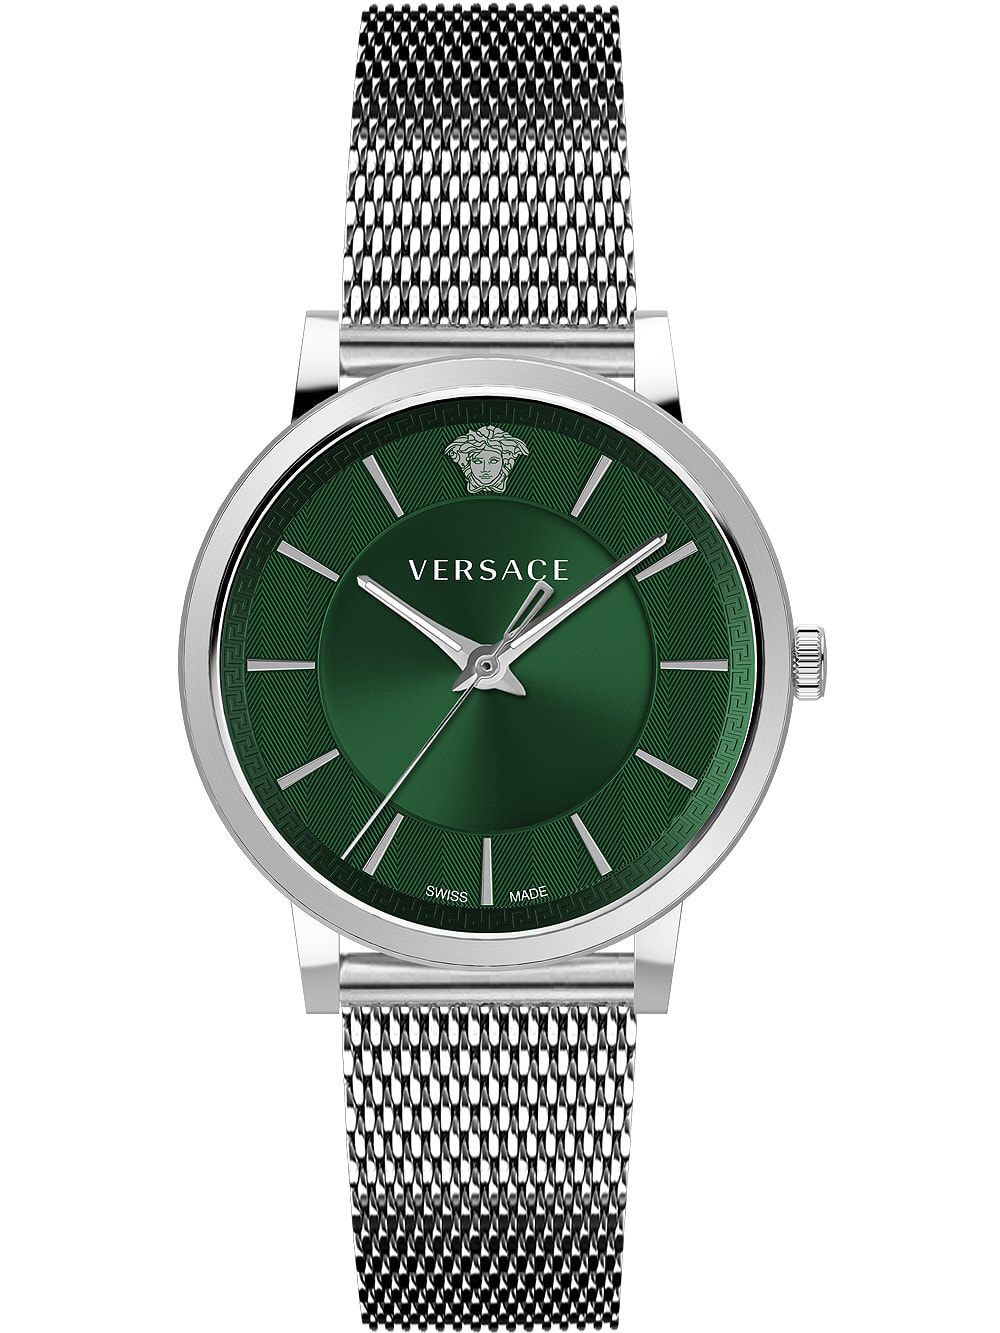 Мужские наручные часы с серебряным браслетом Versace VE5A00620 V-Circle mens 42mm 5ATM